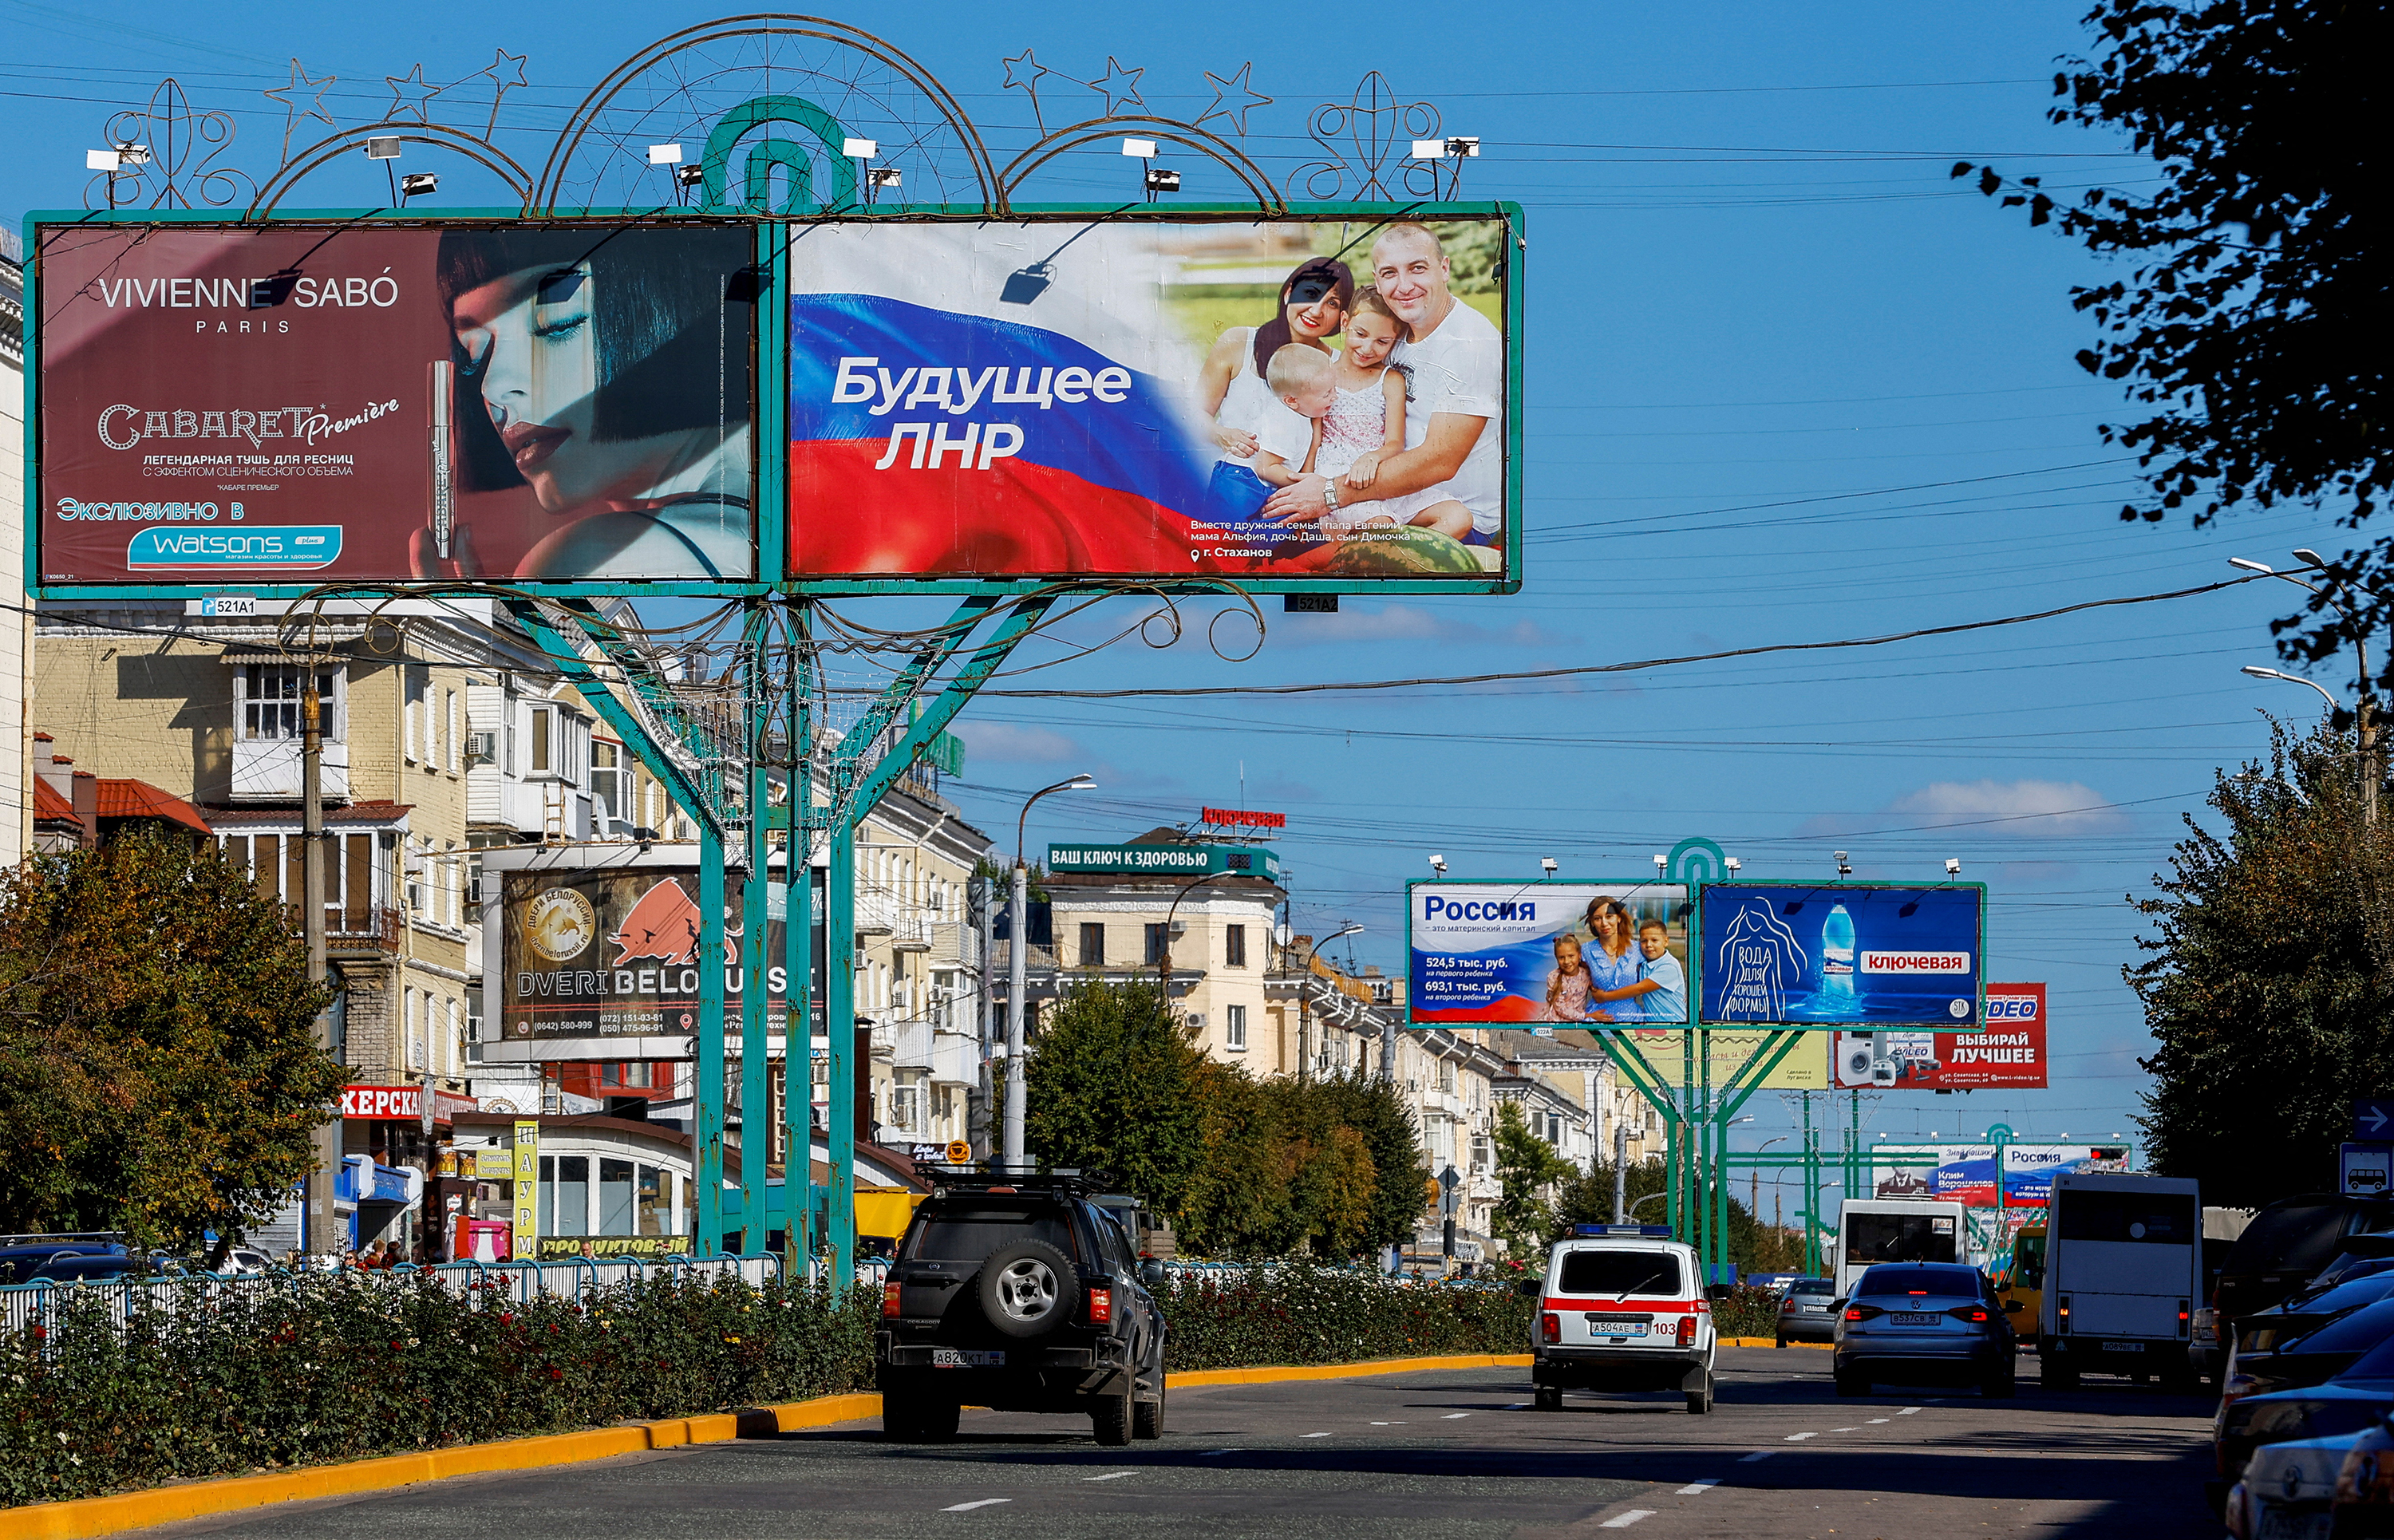 Veículos passam por placas de publicidade, incluindo painéis exibindo slogans pró-Rússia, em uma rua durante o conflito Rússia-Ucrânia em Luhansk, Ucrânia, em 20 de setembro.